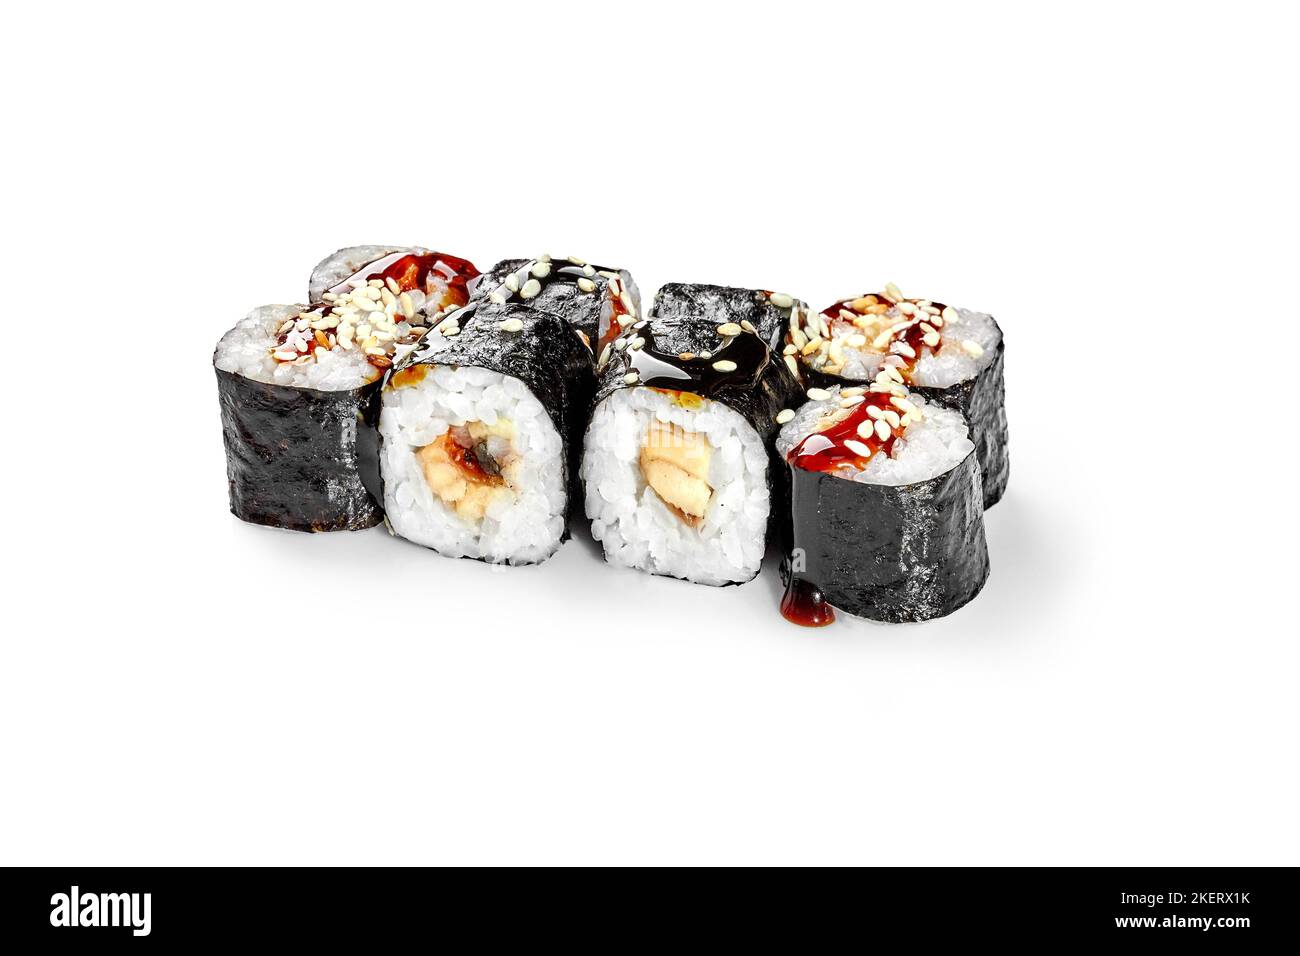 https://c8.alamy.com/comp/2KERX1K/pieces-of-norimaki-rolls-with-eel-topped-with-unagi-sauce-and-sesame-2KERX1K.jpg